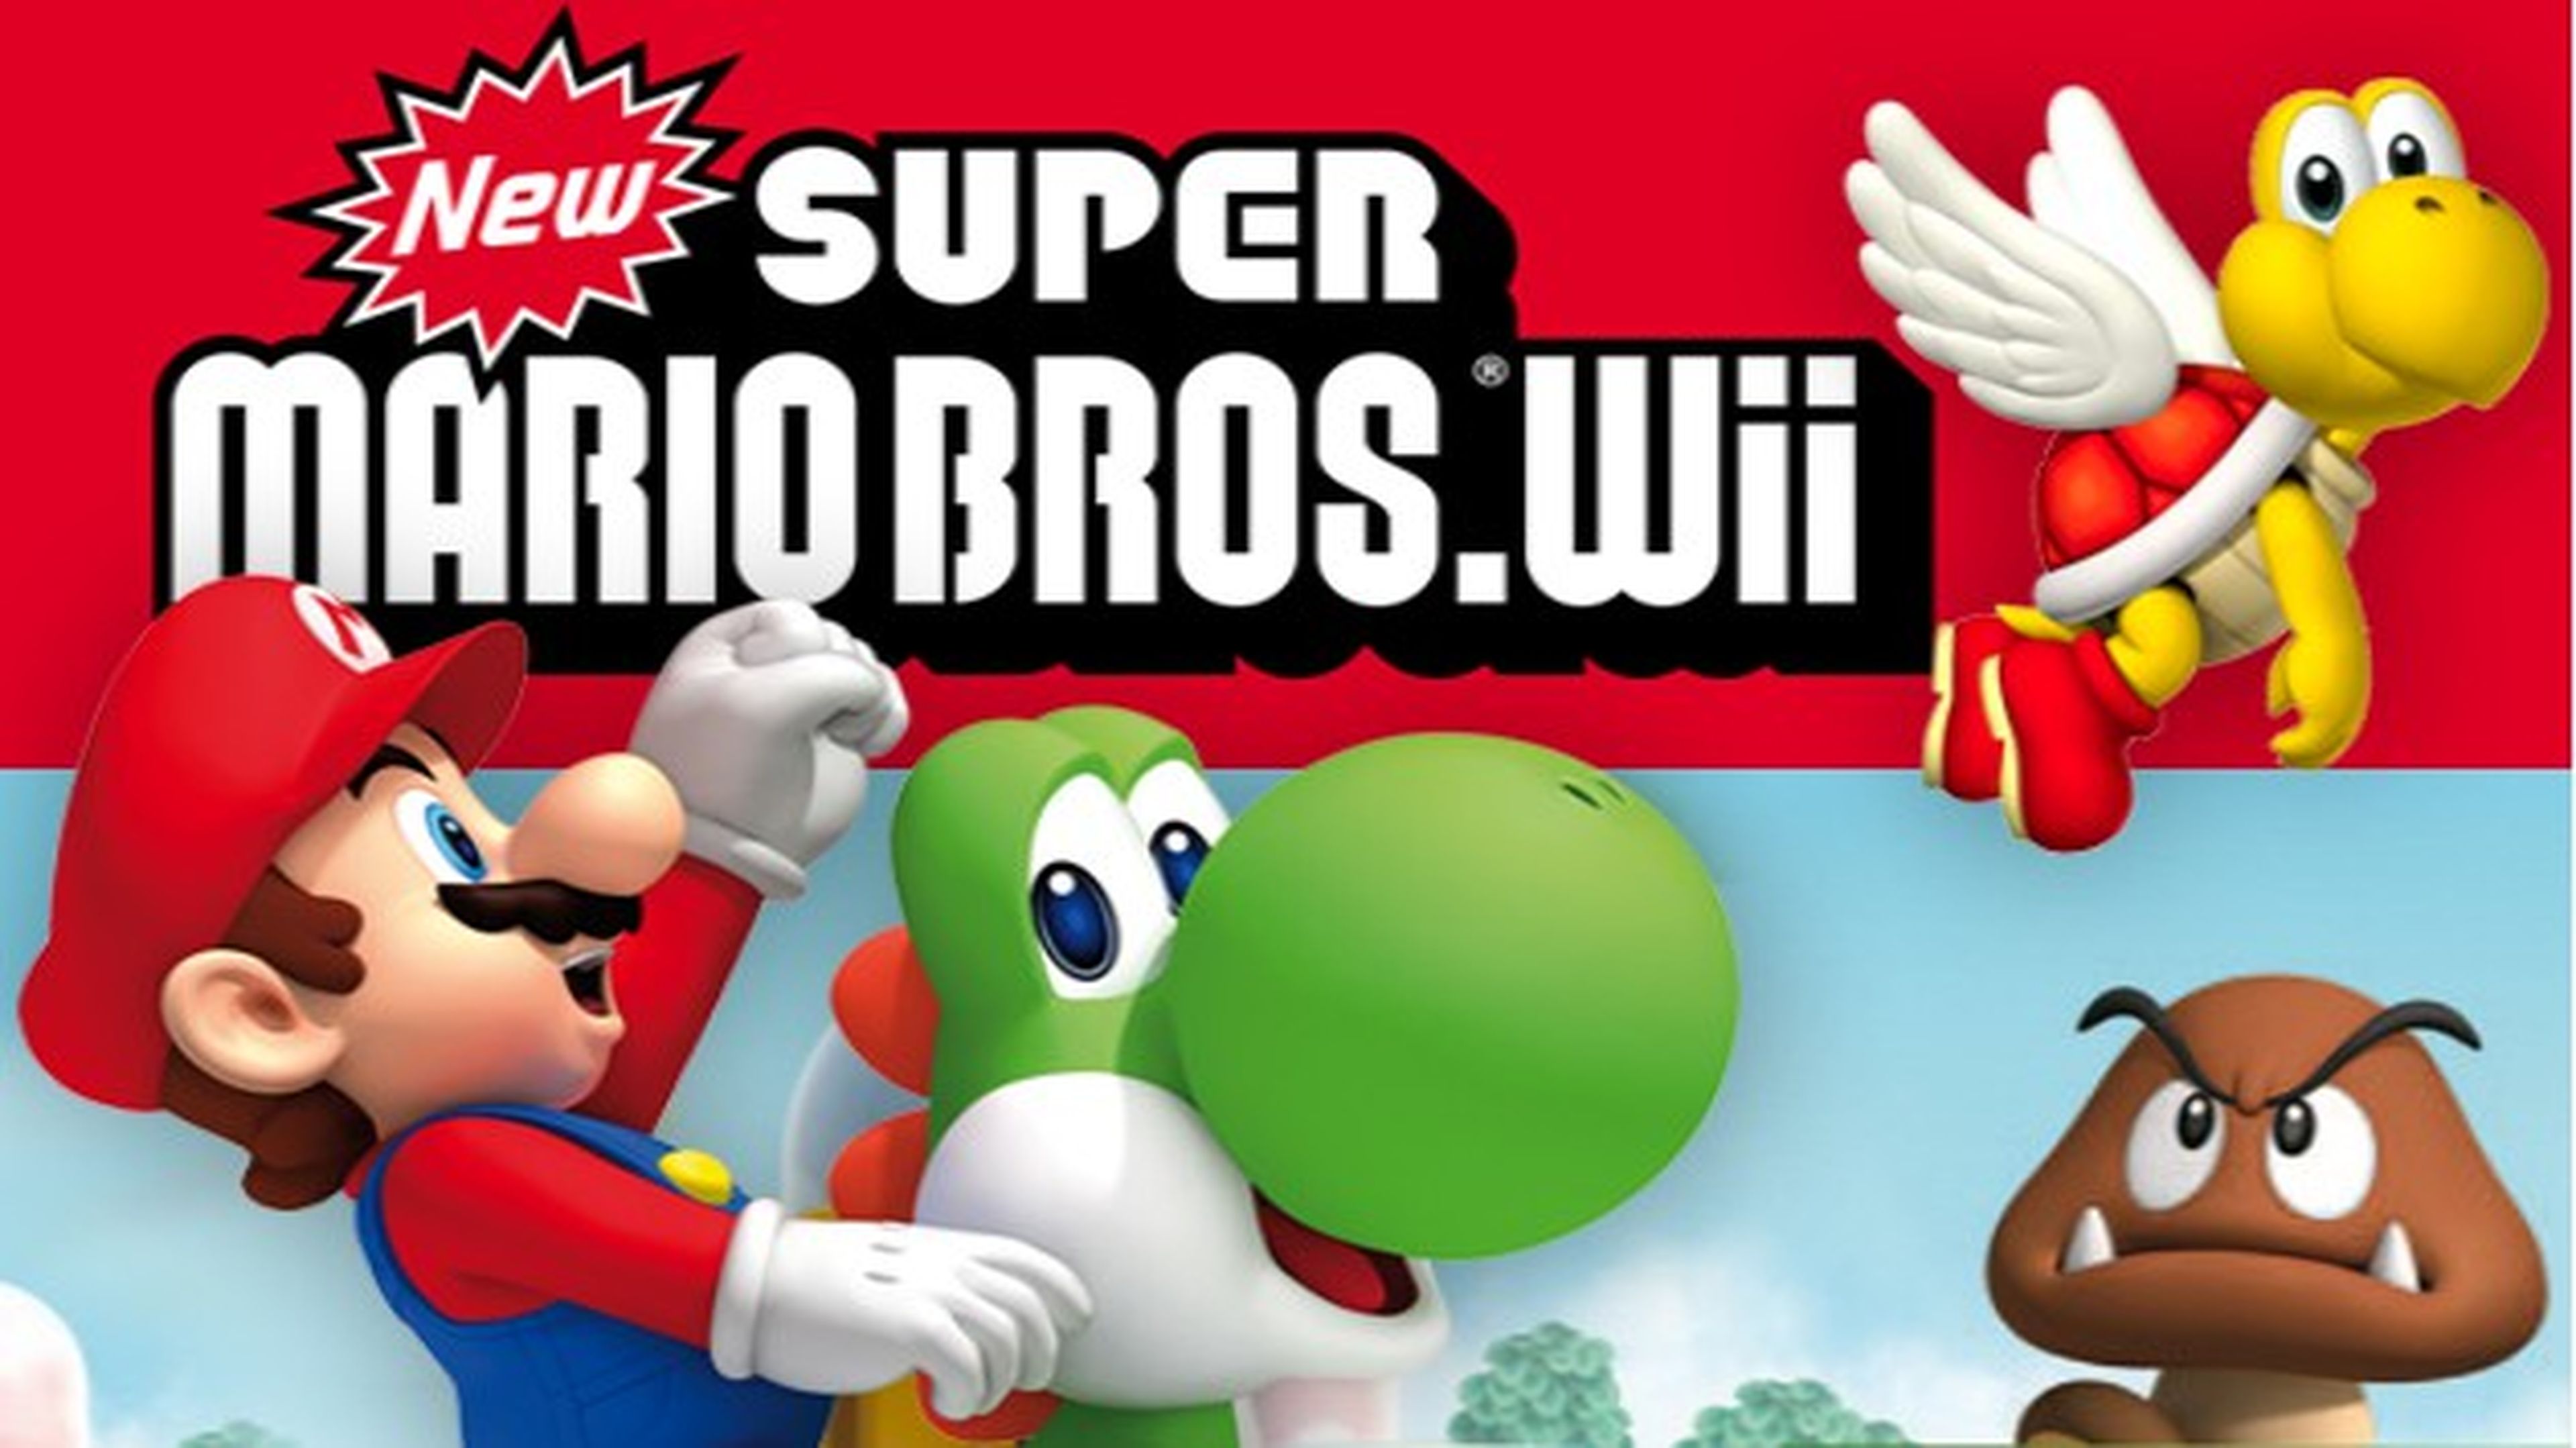 New Super Mario Bros. Wii, cómo conseguir todas las monedas estrella